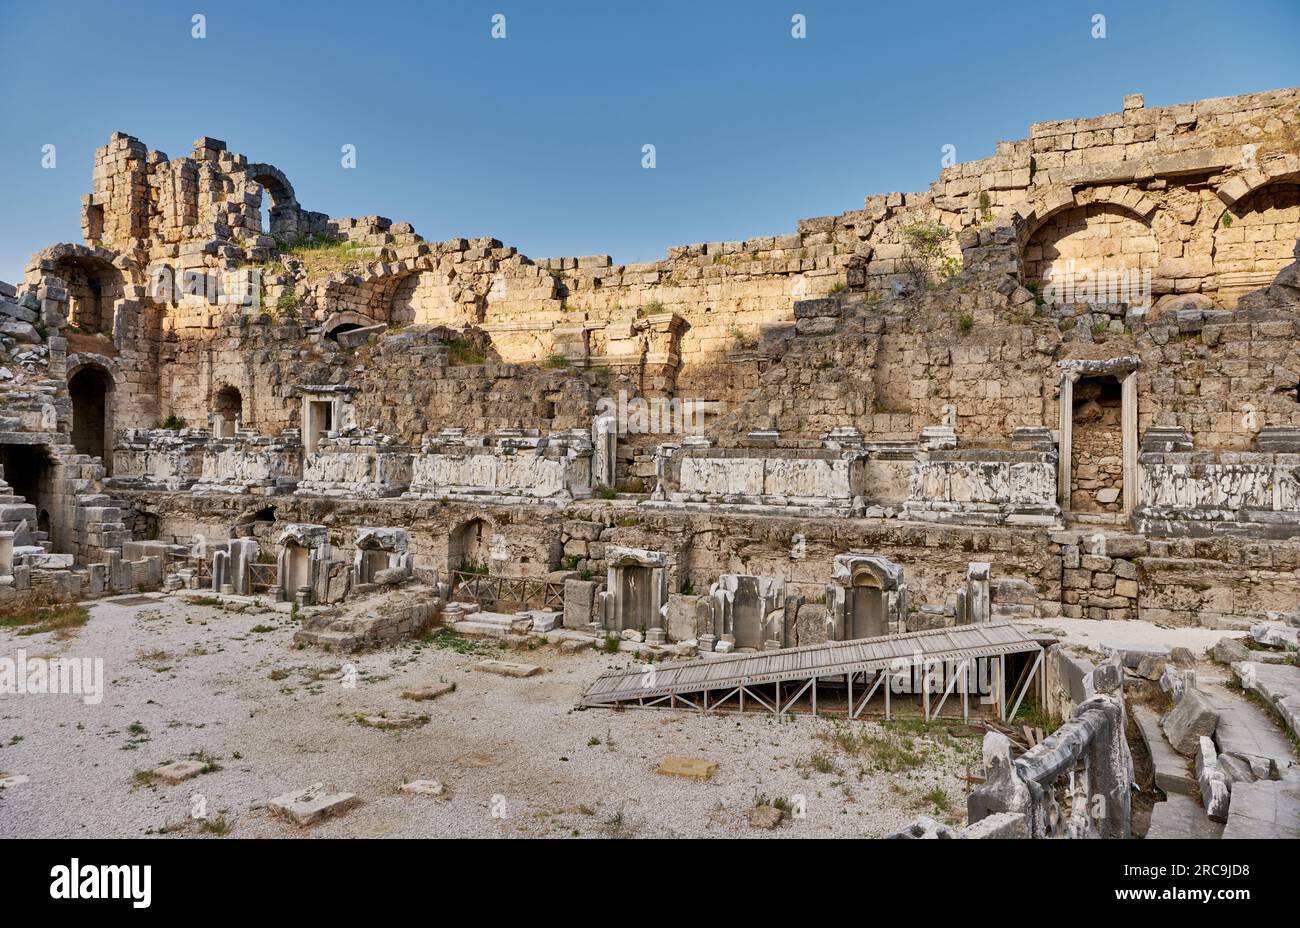 Theater von Perge, Ruinen der roemischen Stadt Perge, Antalya, Türkei    |theatre of Perge, ruins of the Roman city of Perge, Antalya, Turkey| Stock Photo